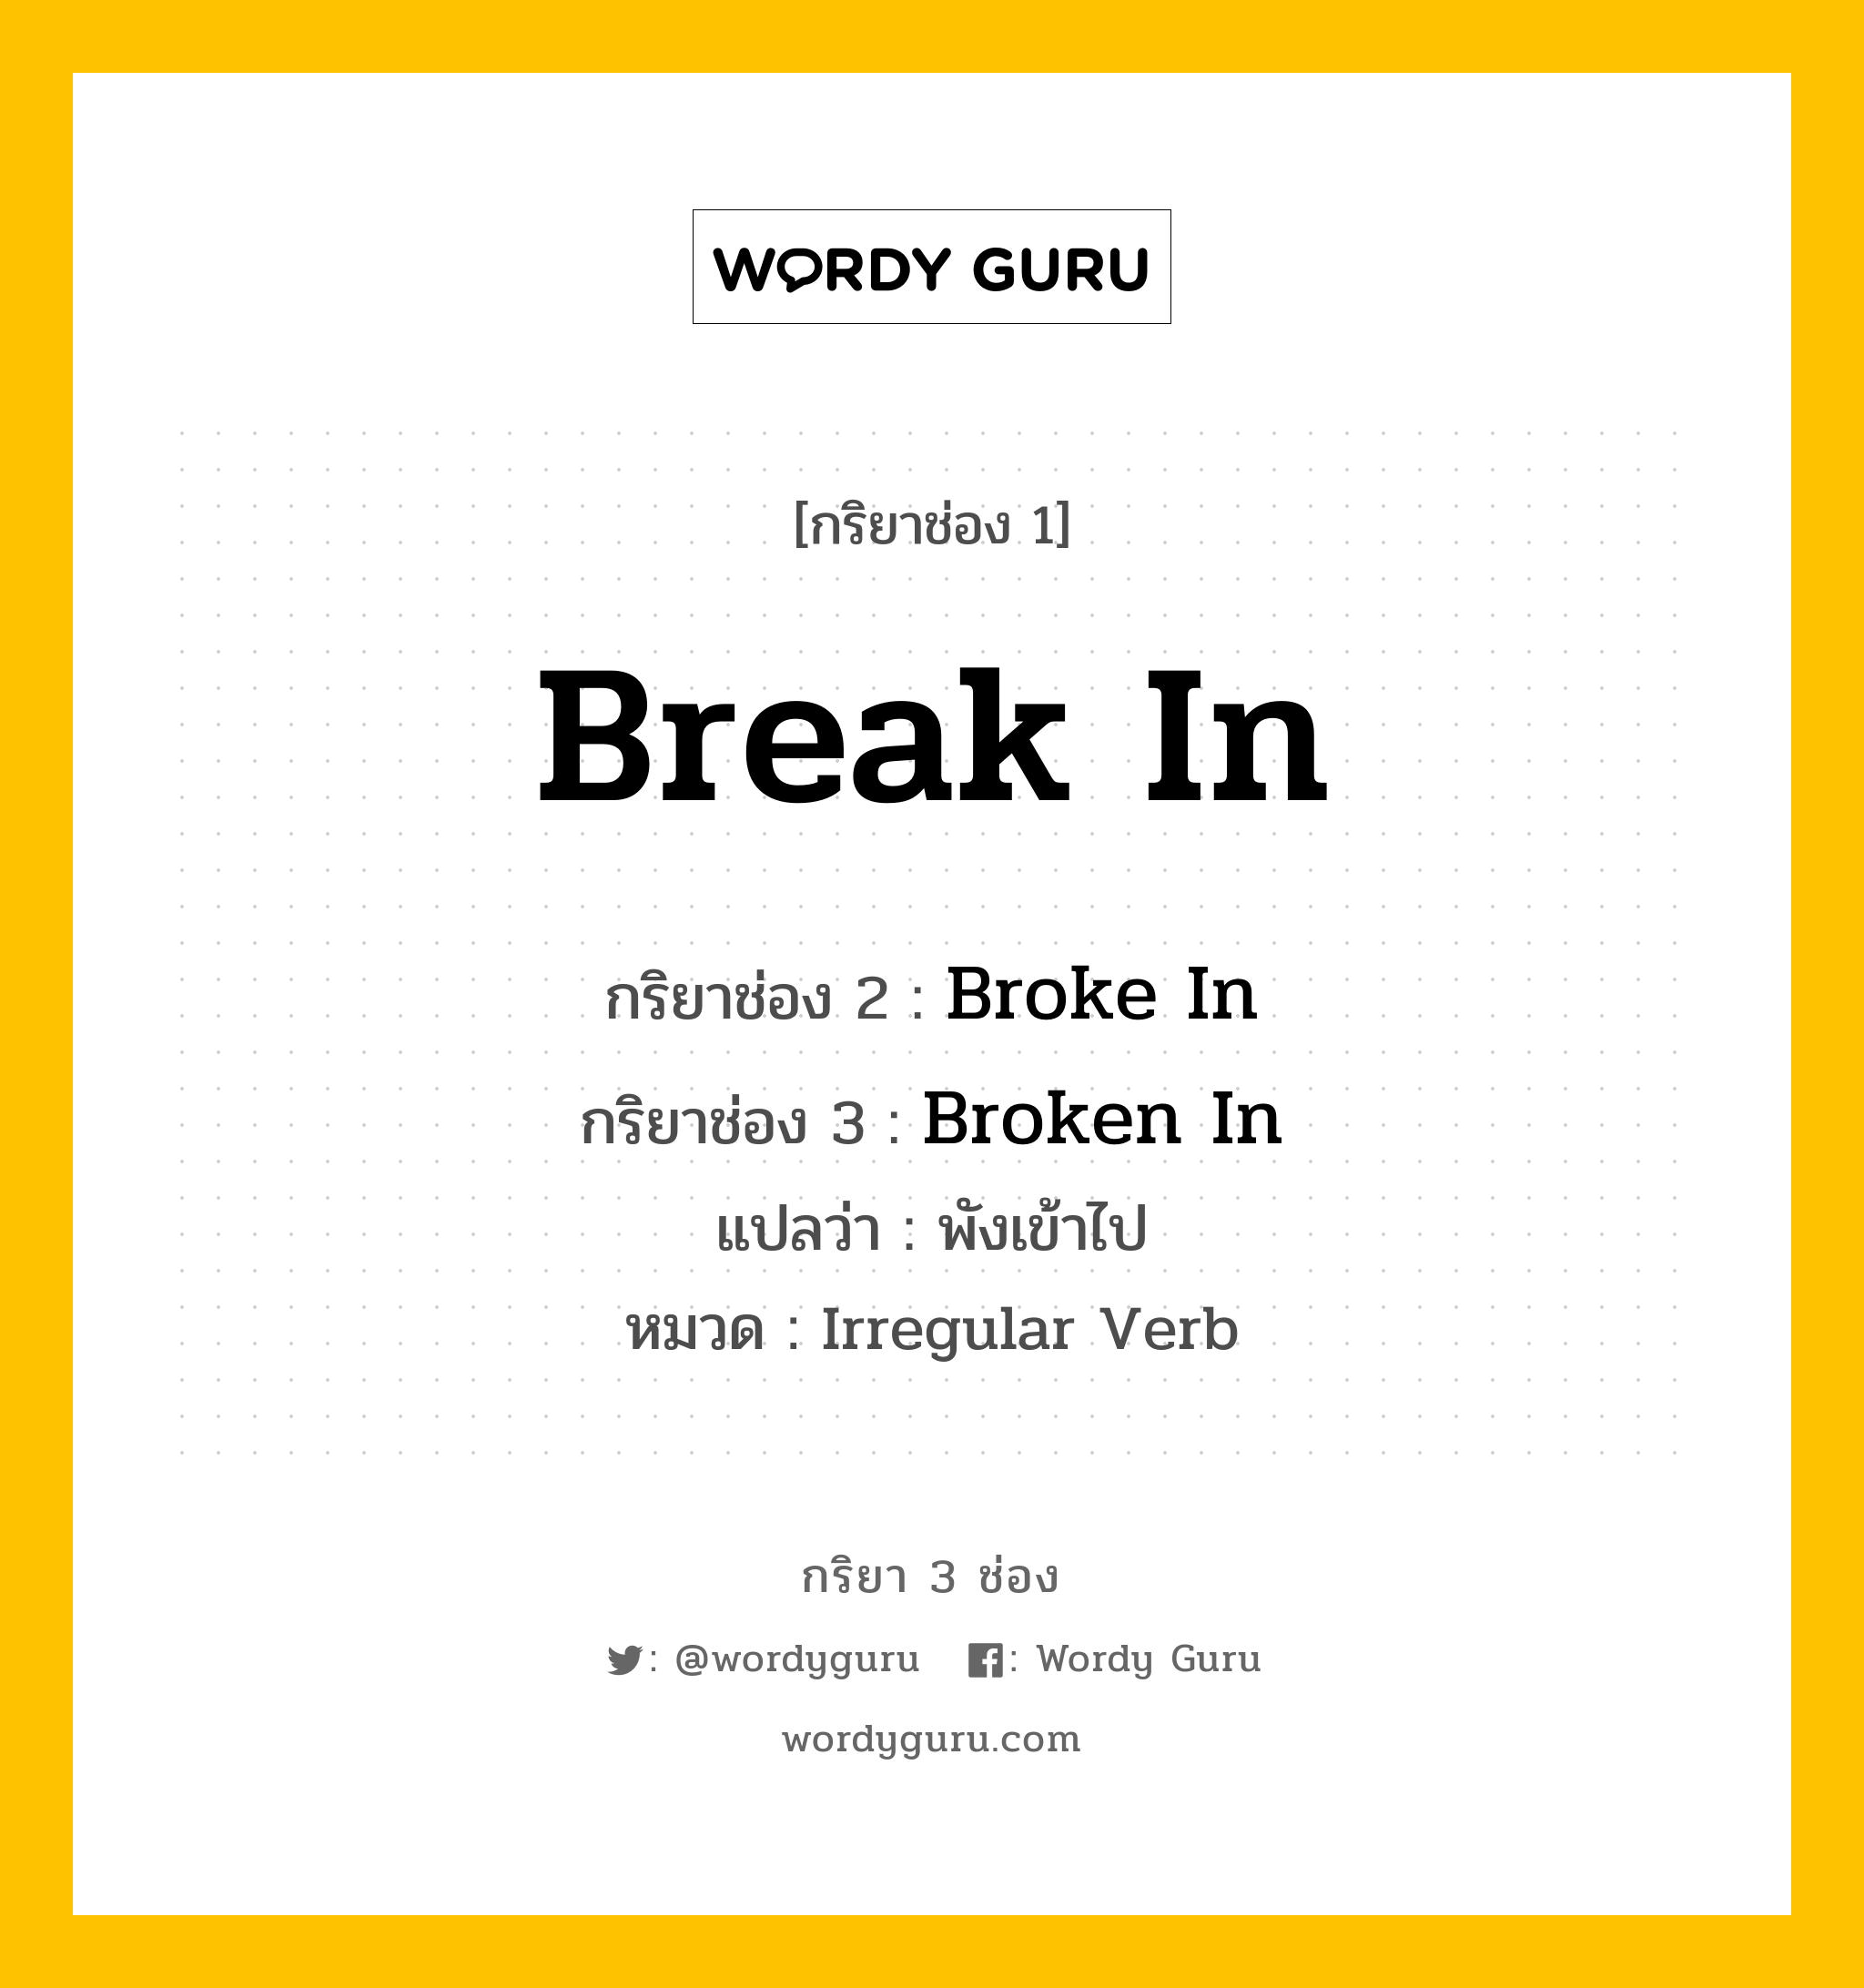 กริยา 3 ช่อง: Break In ช่อง 2 Break In ช่อง 3 คืออะไร, กริยาช่อง 1 Break In กริยาช่อง 2 Broke In กริยาช่อง 3 Broken In แปลว่า พังเข้าไป หมวด Irregular Verb หมวด Irregular Verb